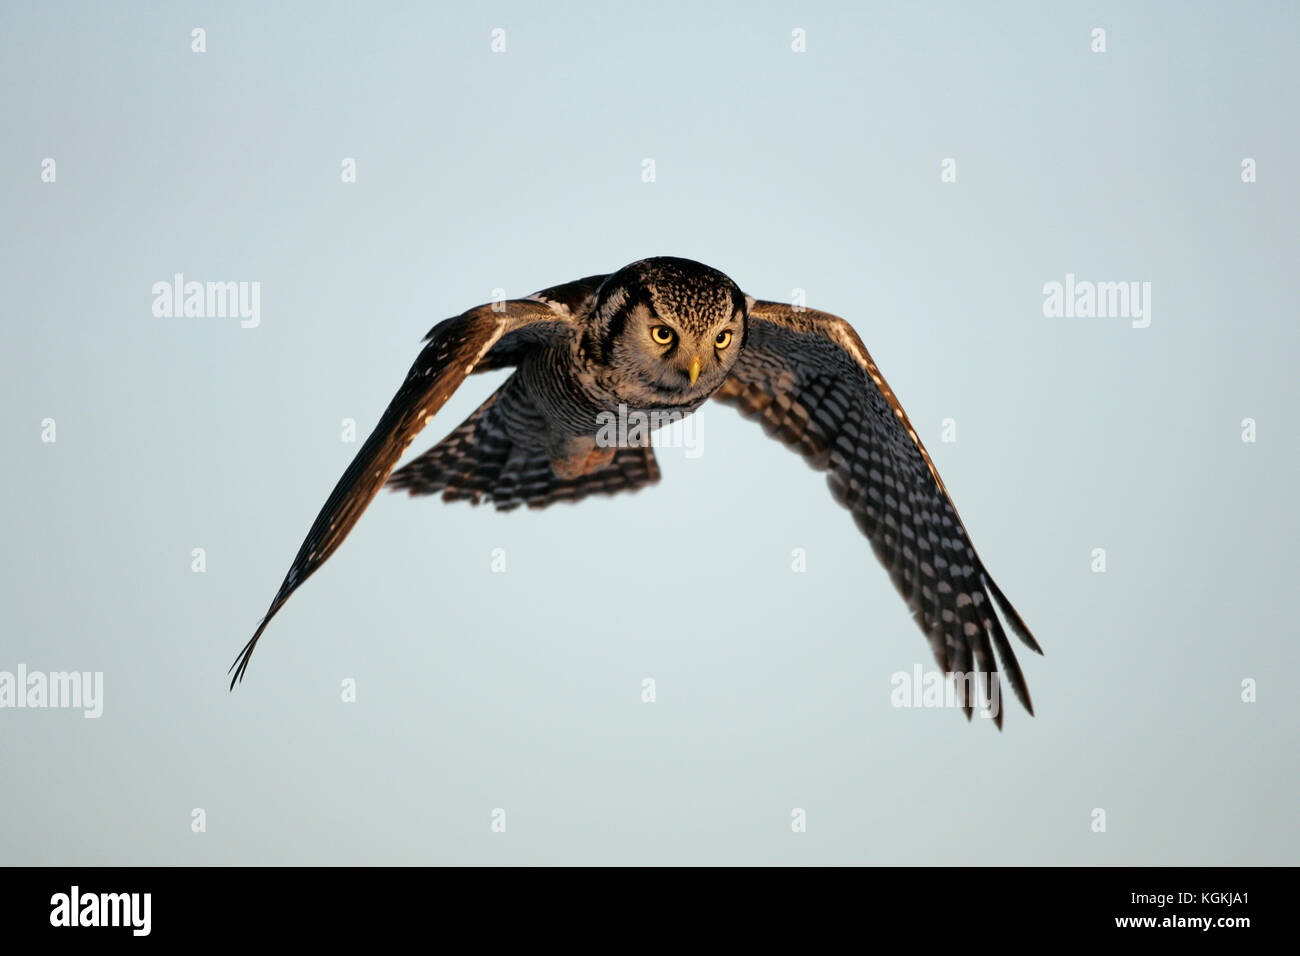 Eine Aktion Nahaufnahme eines Northern hawk Owl, im Flug mit Flügel nach unten, vorne leuchtet durch das warme Licht des Sonnenuntergangs. Stockfoto